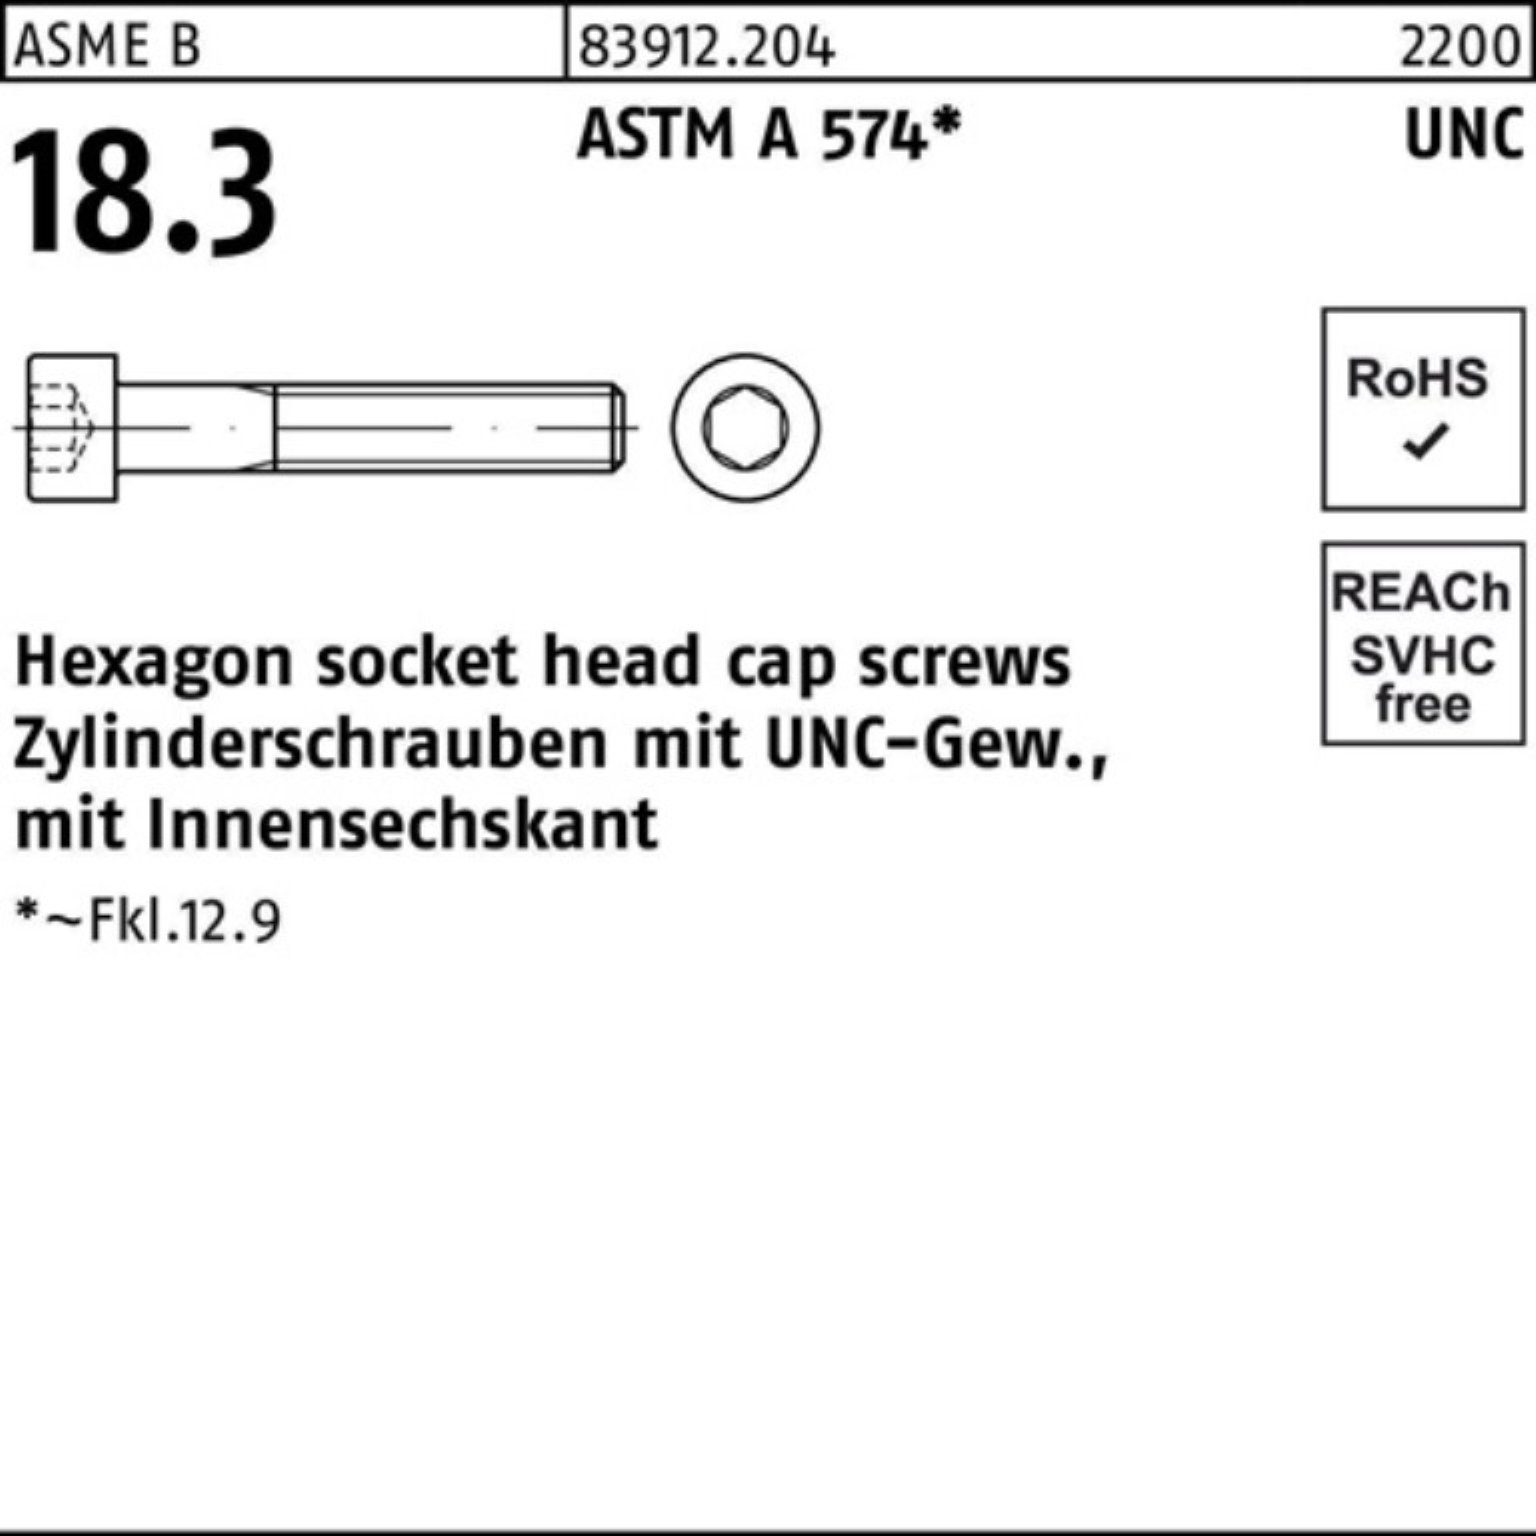 Top-Performance-Marketing Reyher Zylinderschraube R UNC-Gewinde/Innen-6kt AST Zylinderschraube Pack 200er 83912 #4x 5/16